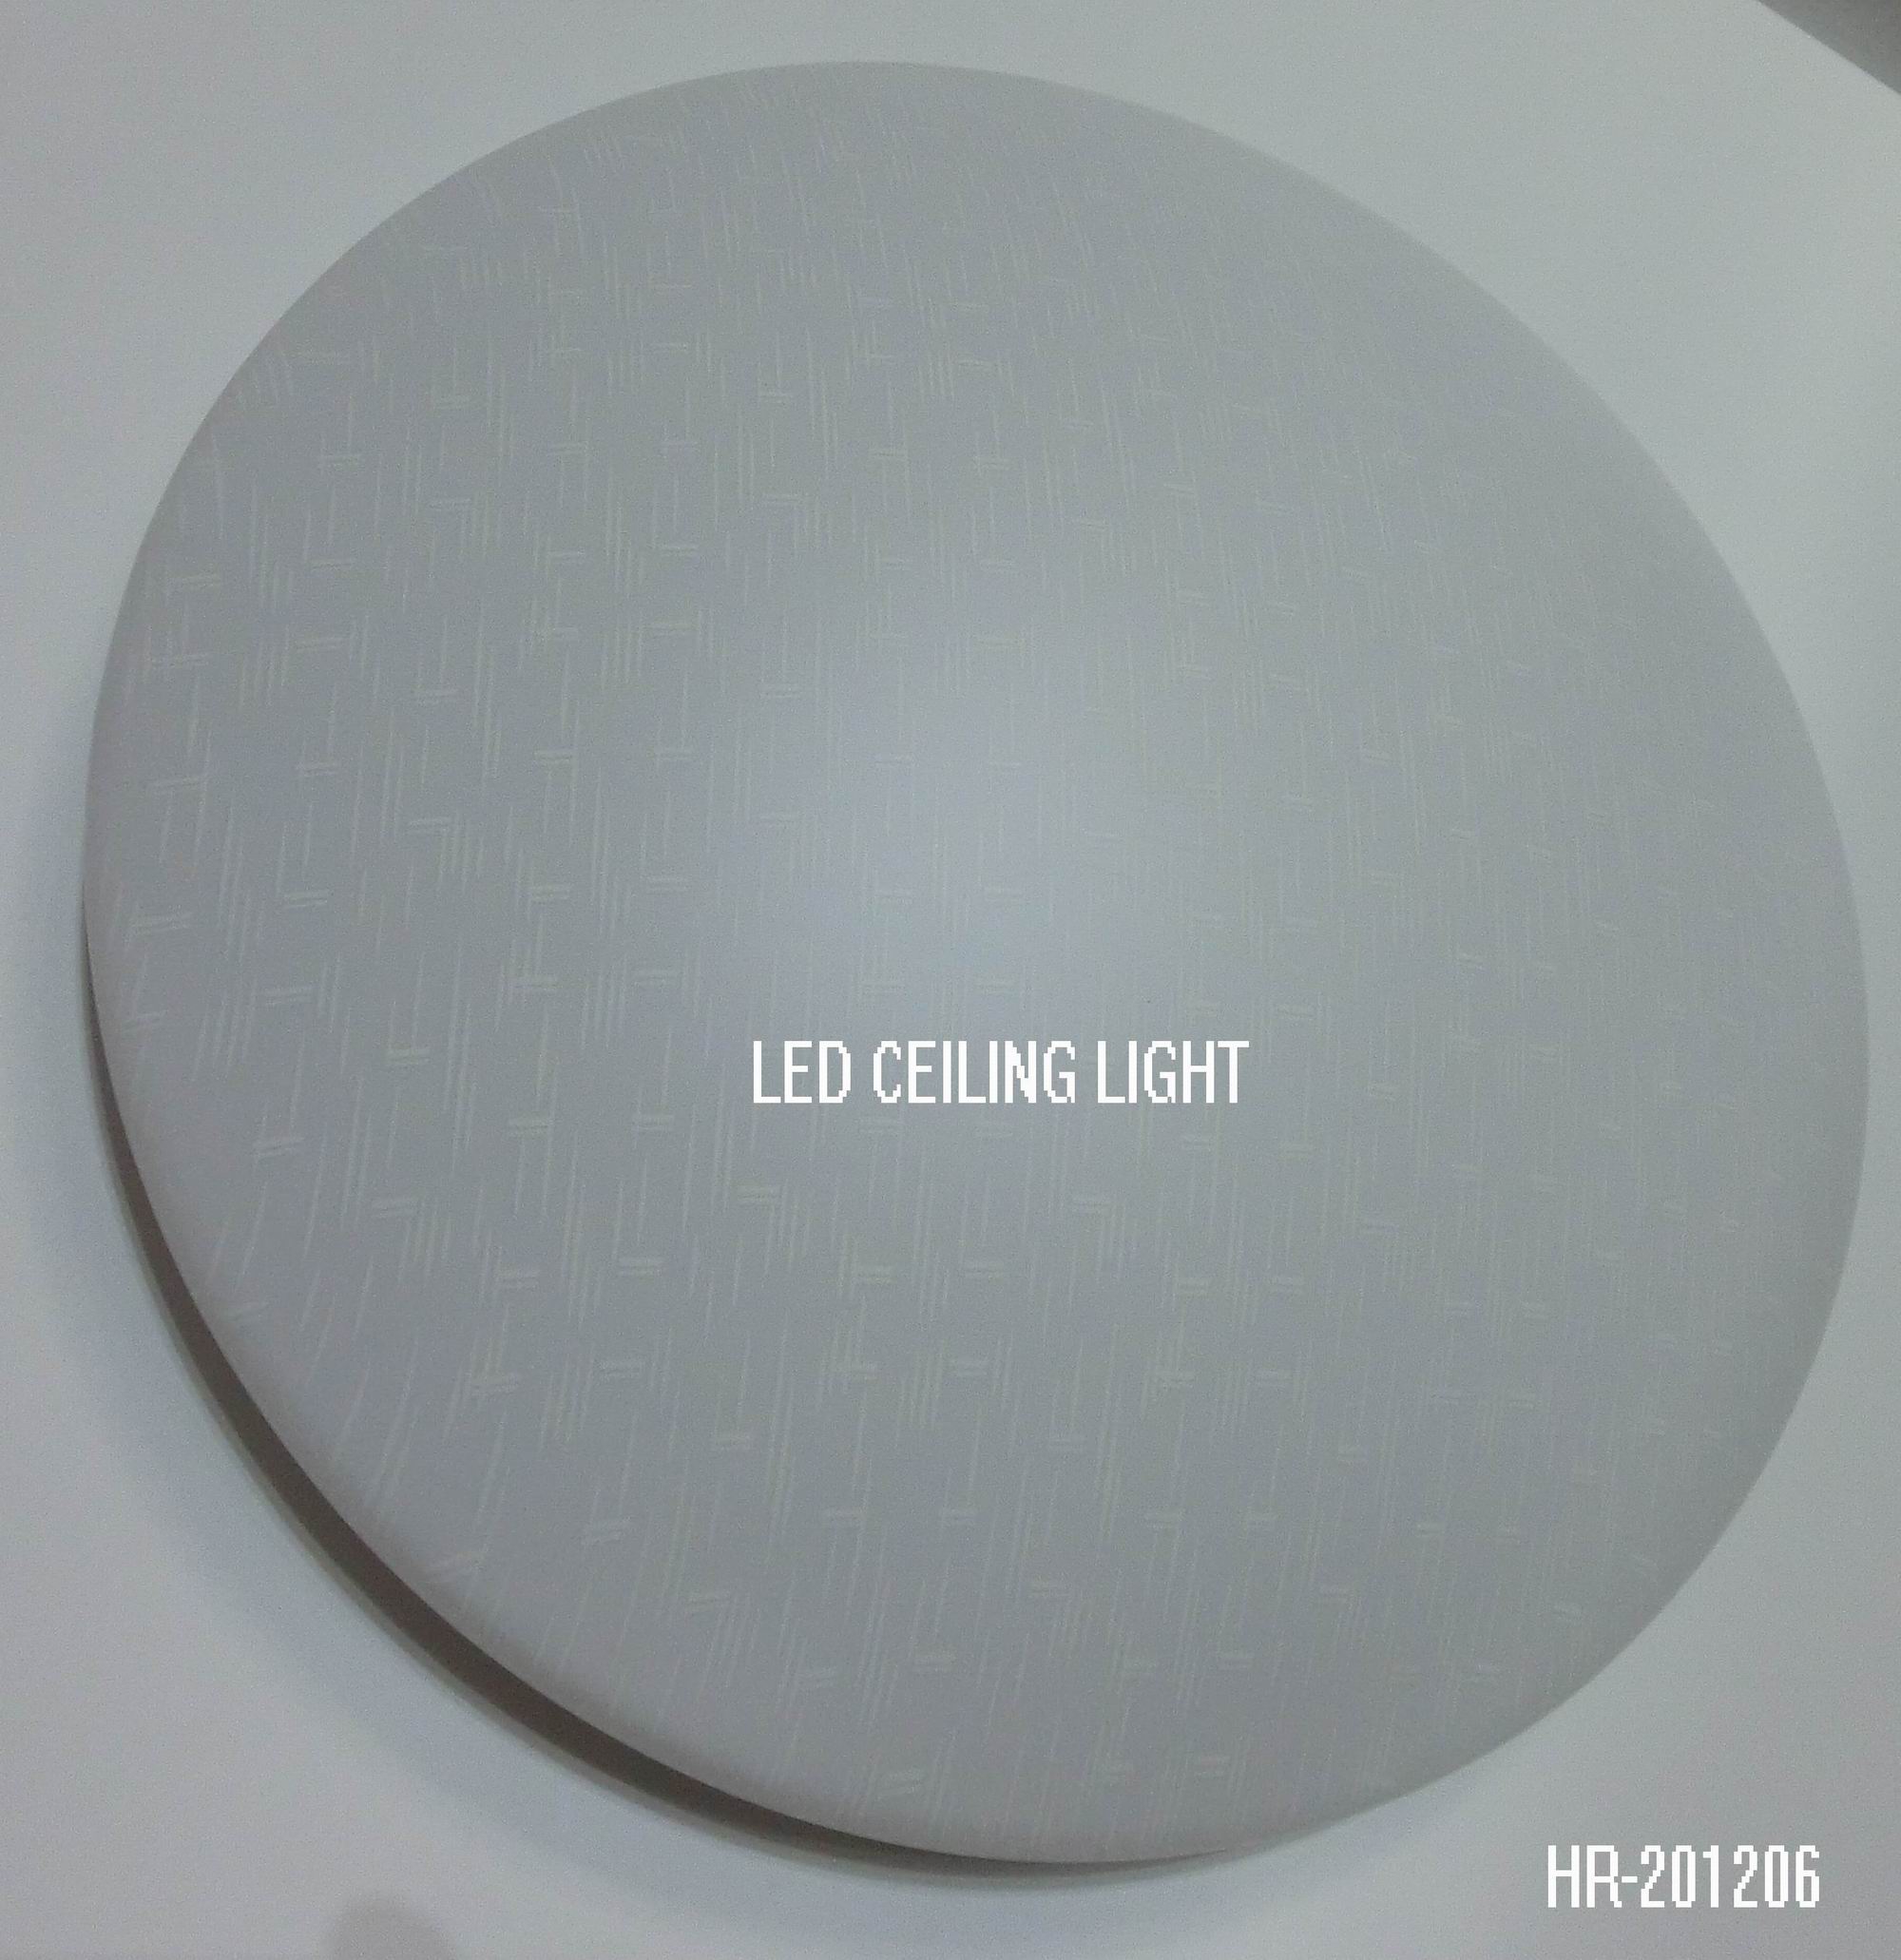 LED CEILING LIGHT HR-201206Spec:Unit: